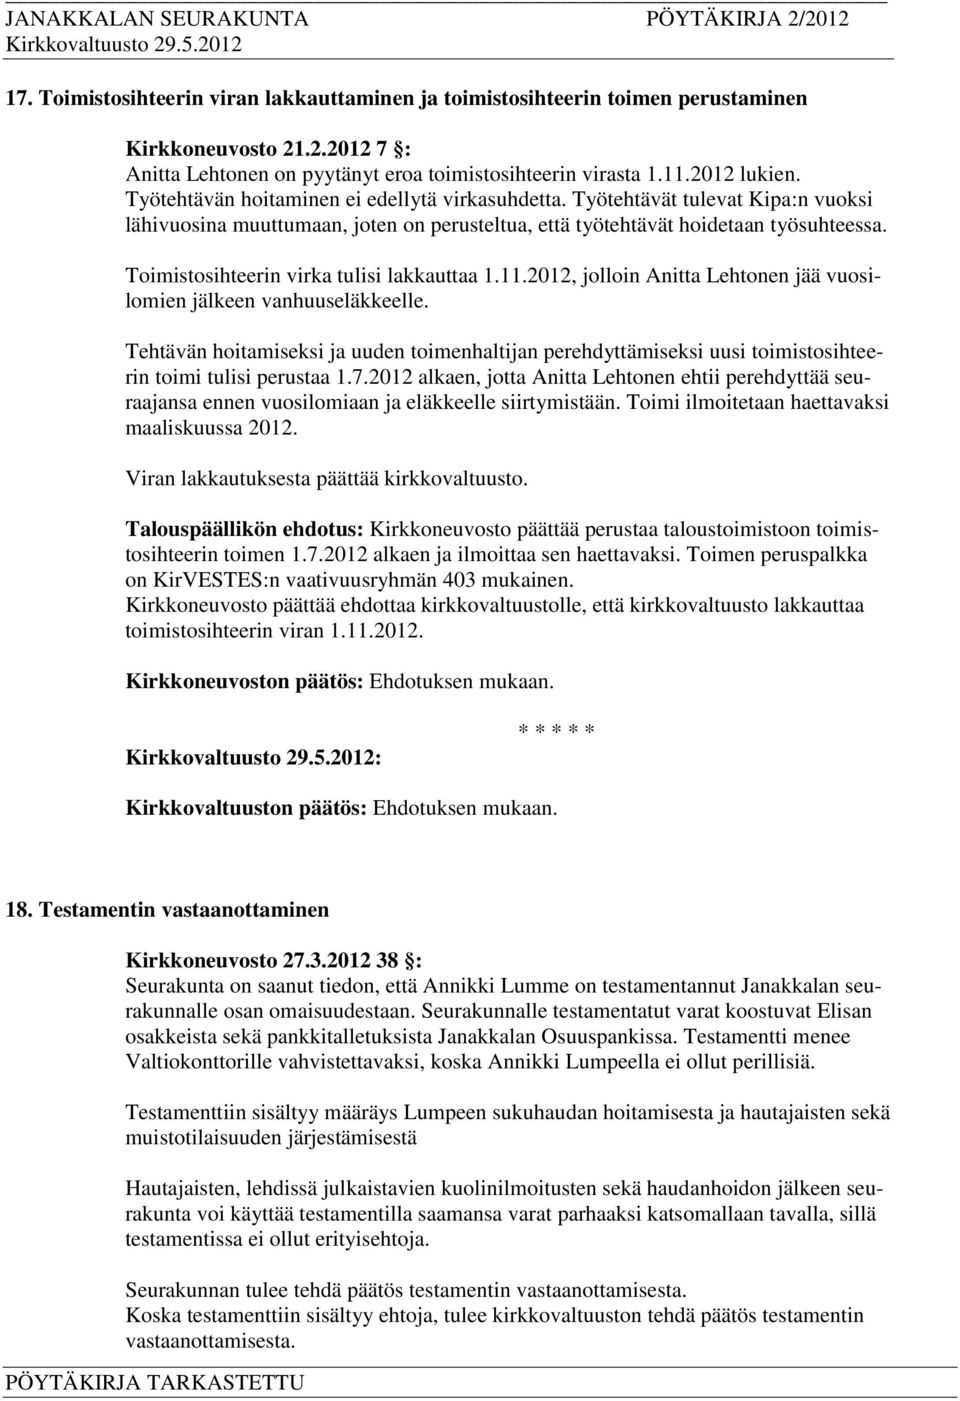 Toimistosihteerin virka tulisi lakkauttaa 1.11.2012, jolloin Anitta Lehtonen jää vuosilomien jälkeen vanhuuseläkkeelle.